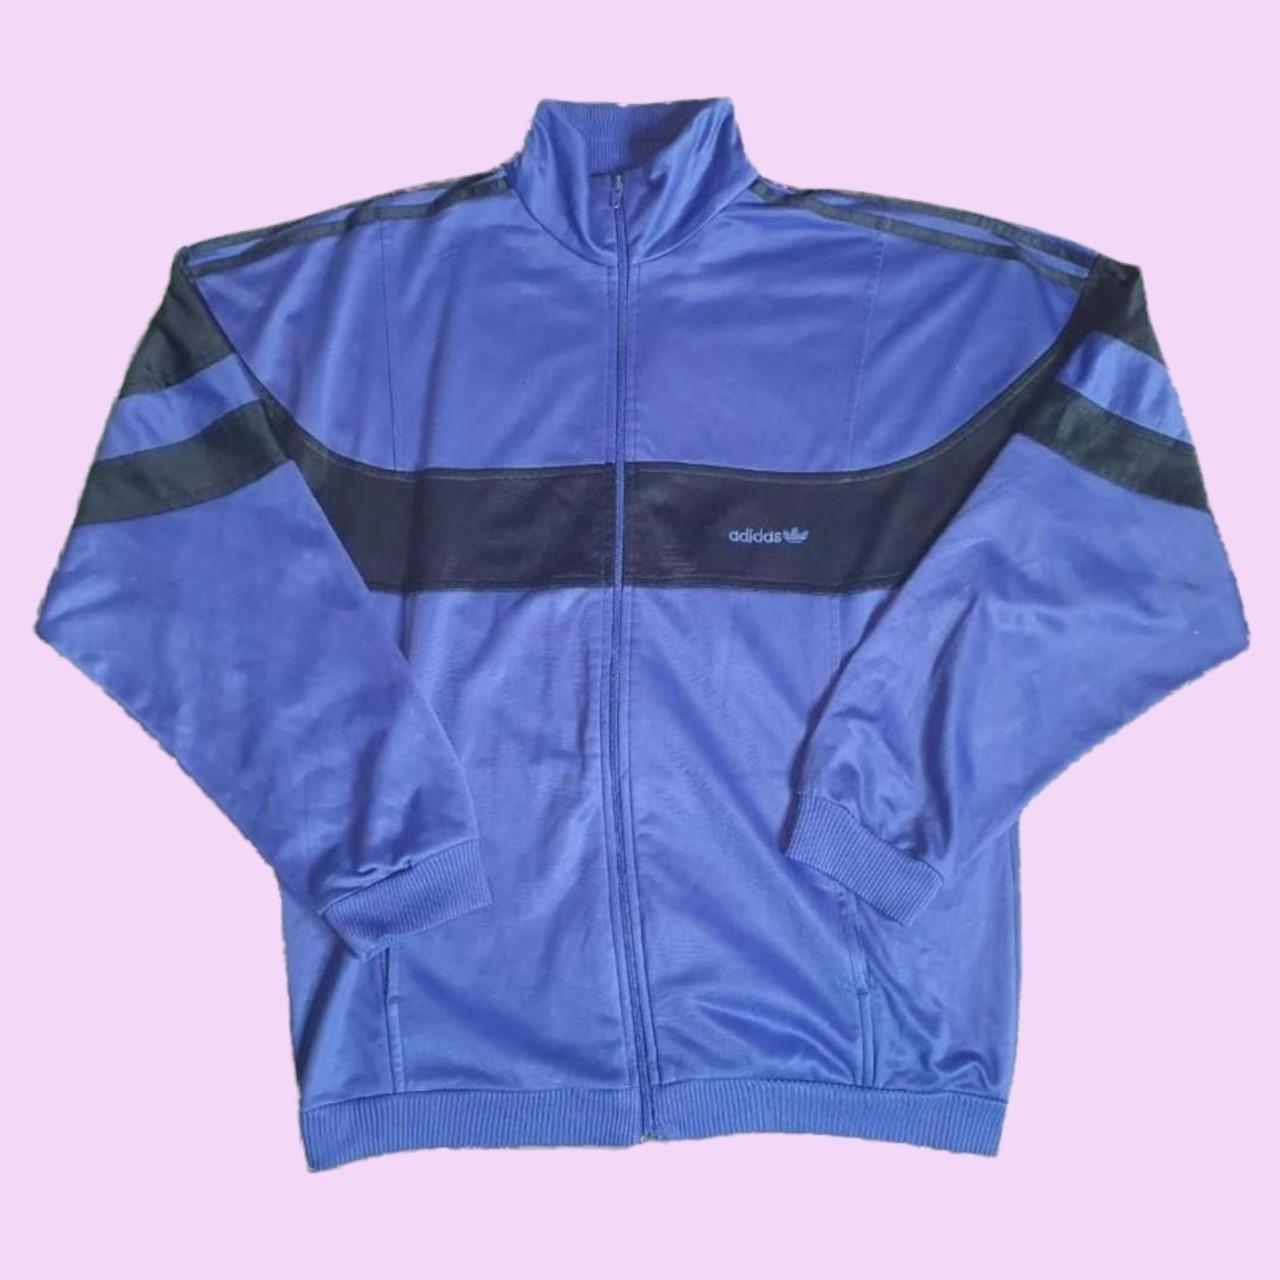 Purple/blue Vintage Adidas Track Jacket Size:... - Depop